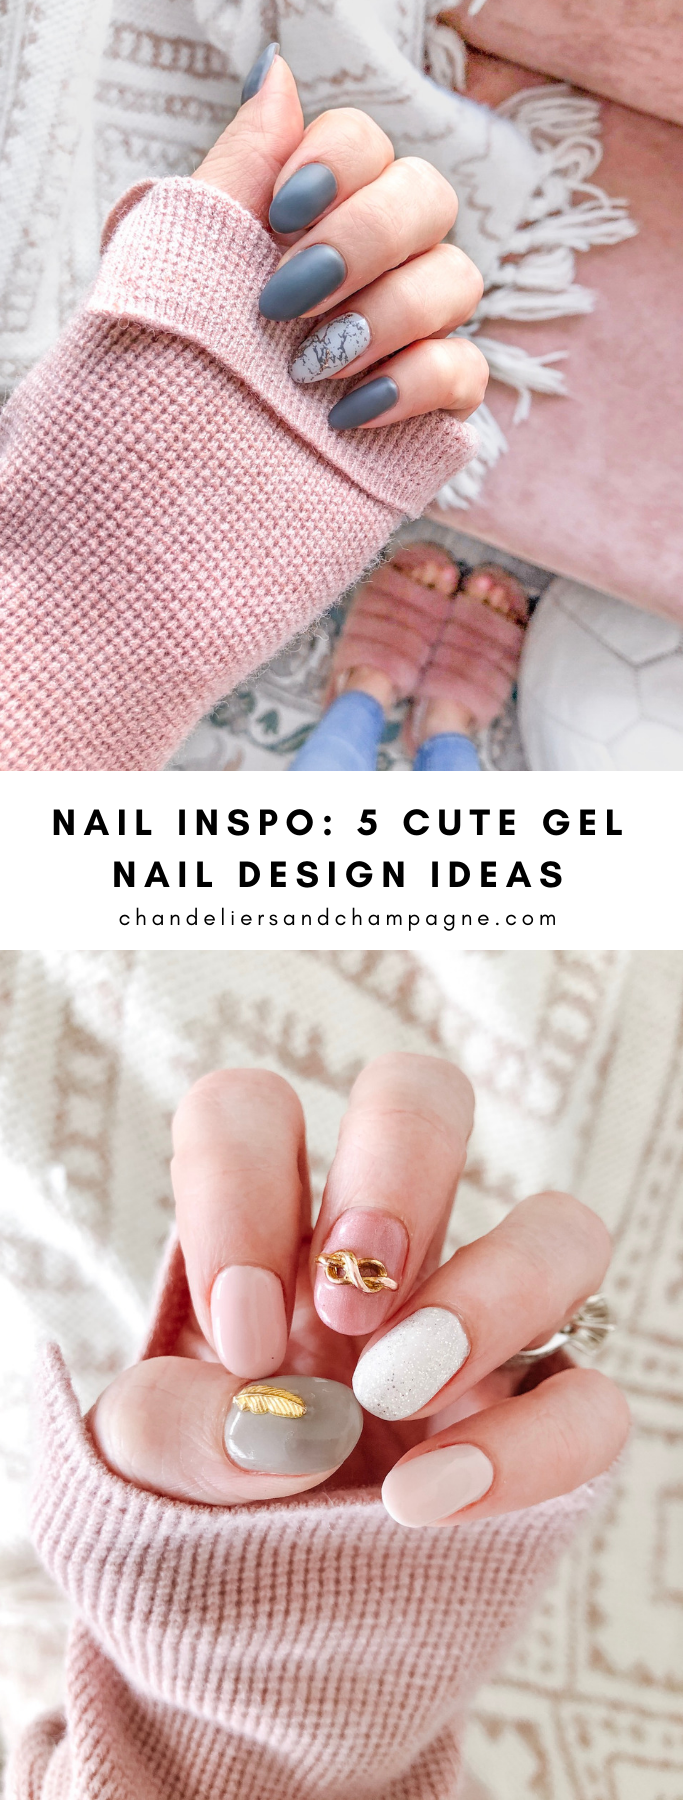 Nail Inspo: 5 Cute Gel Nail Design Ideas